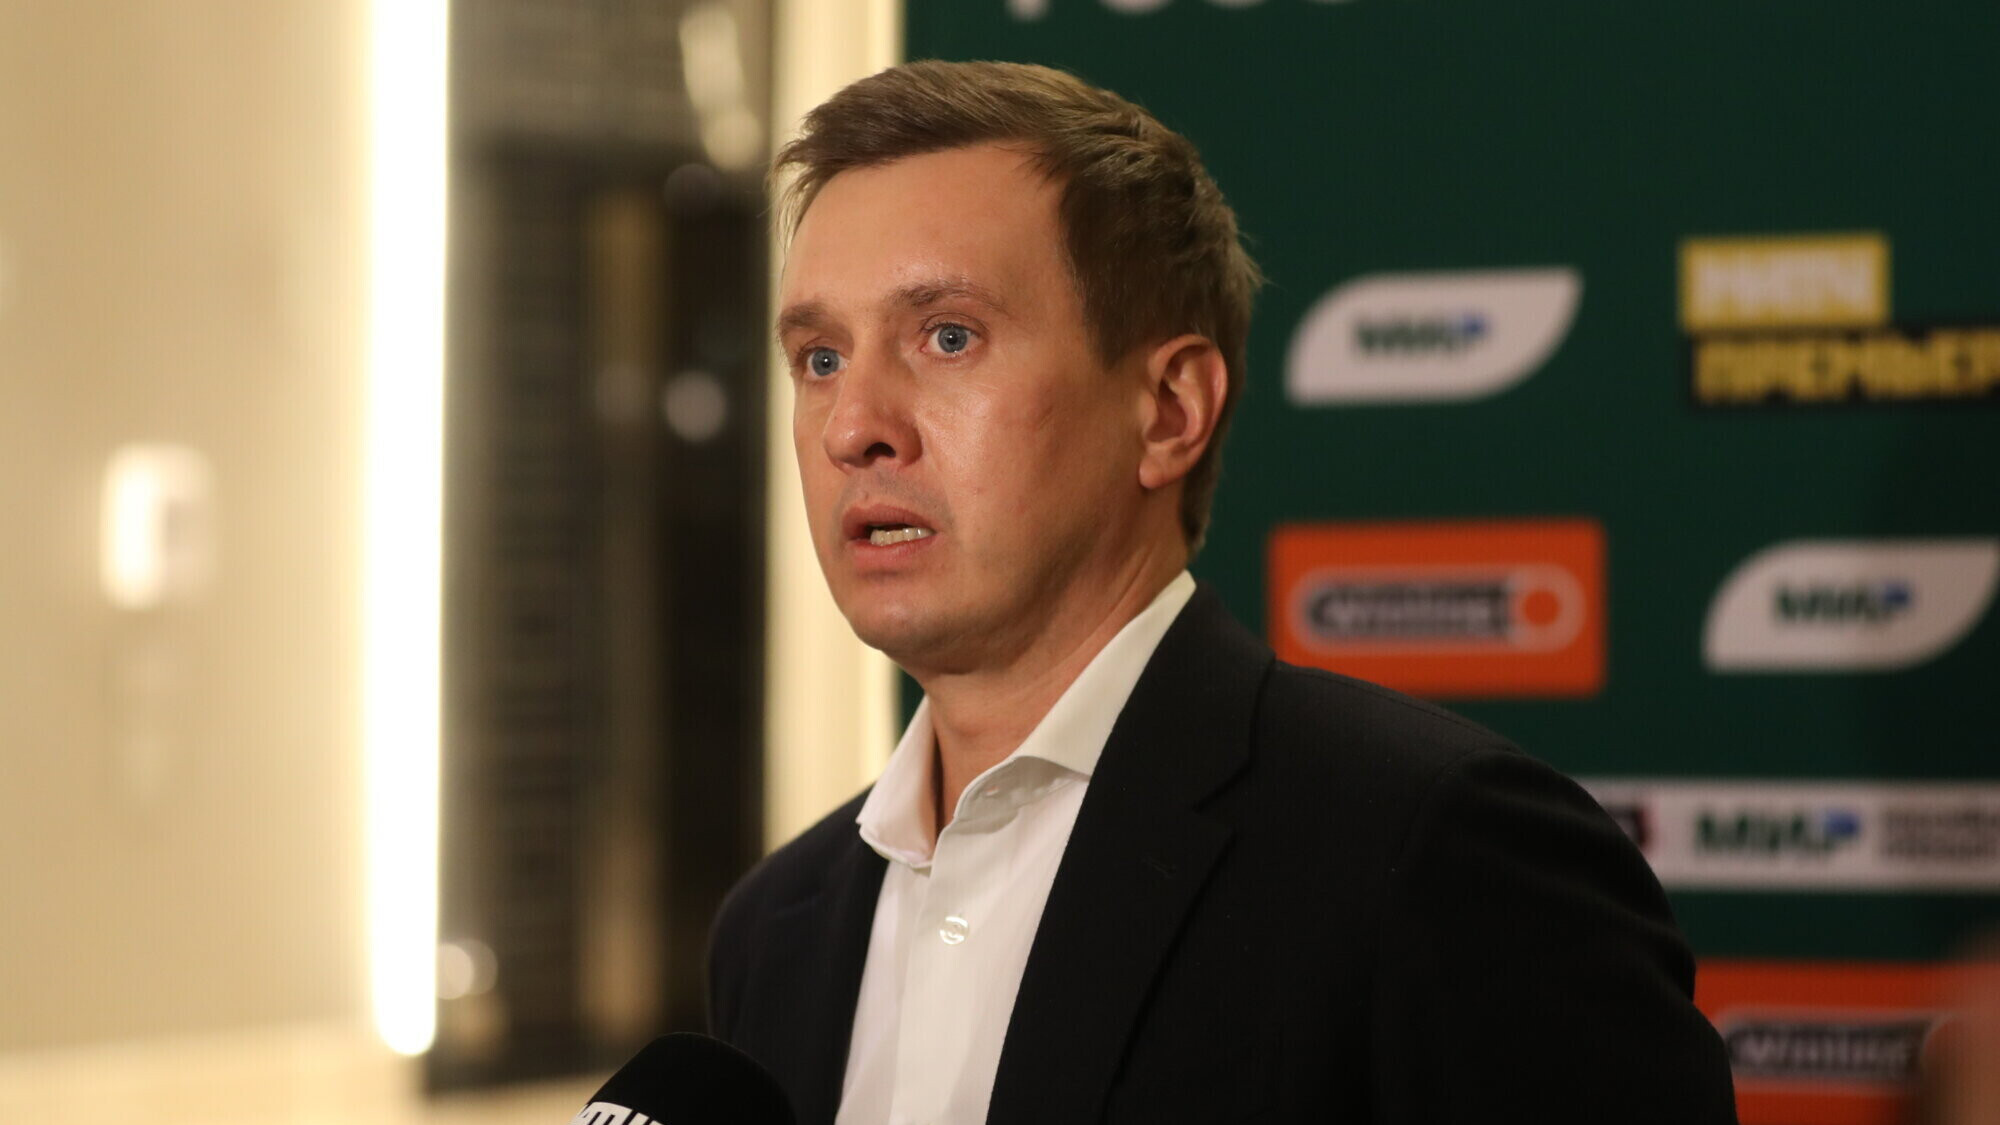 Глава РПЛ Алаев назвал регламент лиги «дырявым», рассуждая о проблемах с переносом матчей